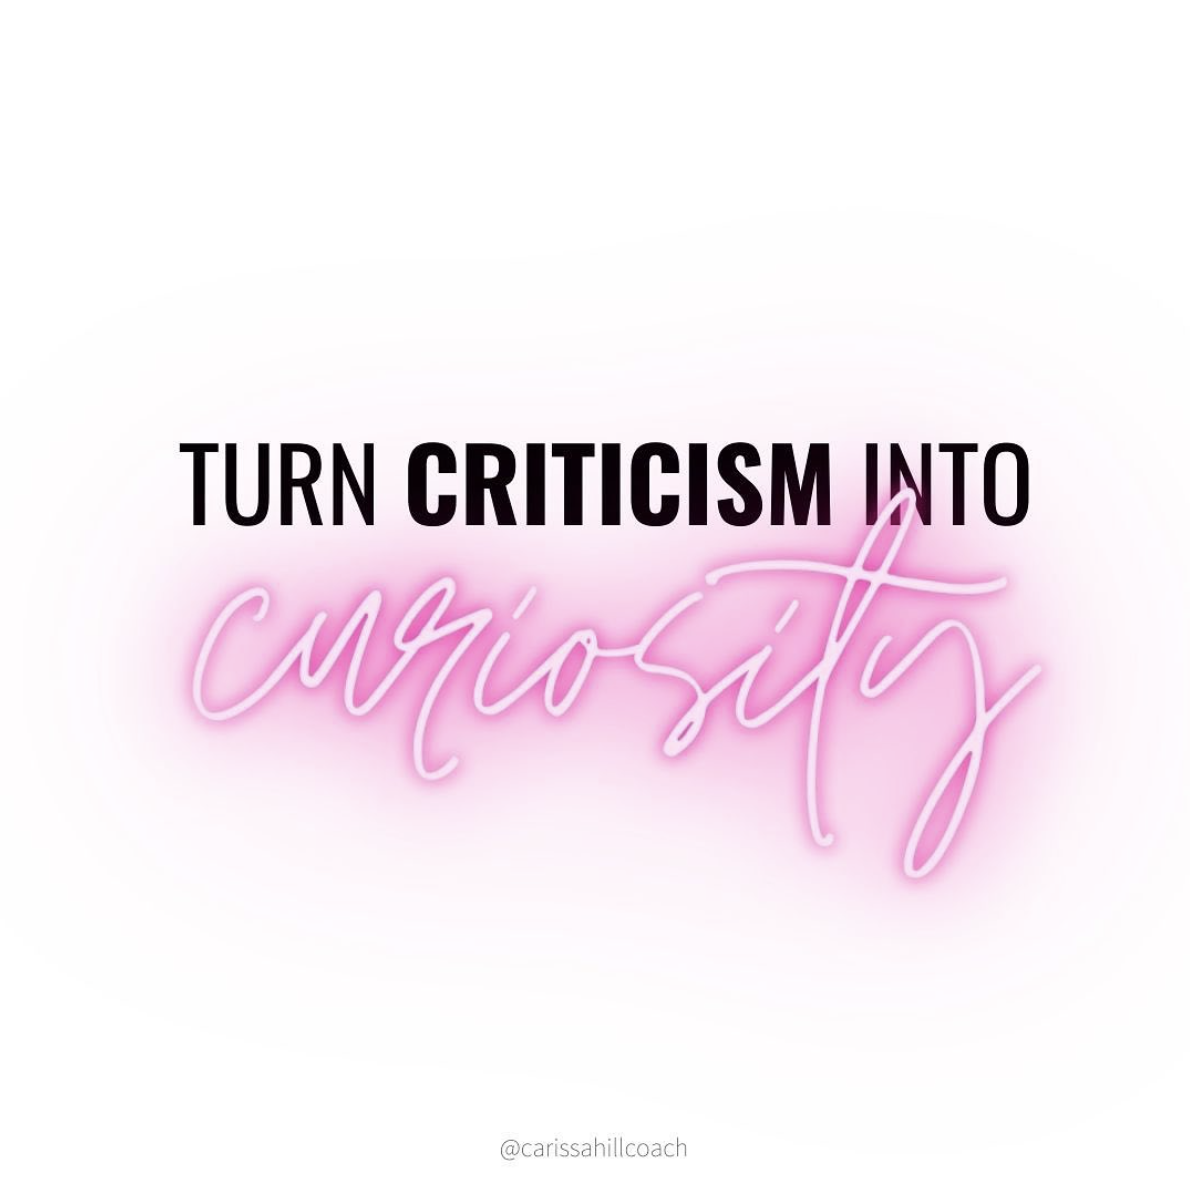 Turn 😡 CRITICISM into ✨ CURIOSITY ✨